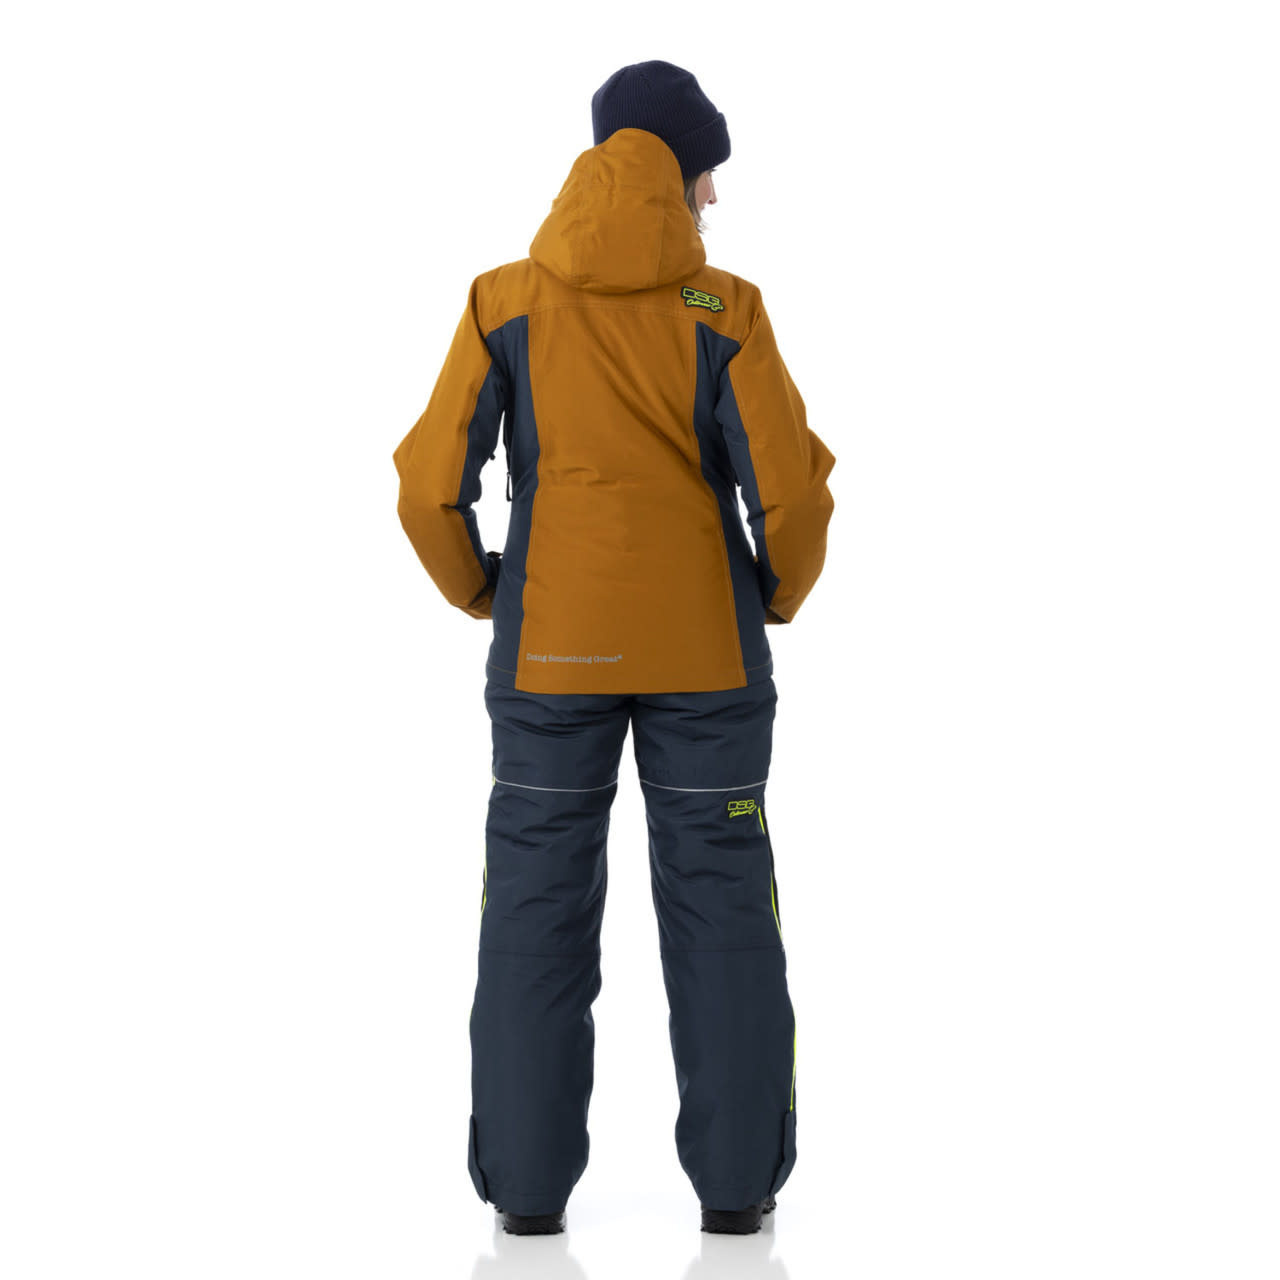 https://cdn.shoplightspeed.com/shops/643162/files/59802326/dsg-outerwear-dsg-arctic-appeal-30-ice-jacket.jpg